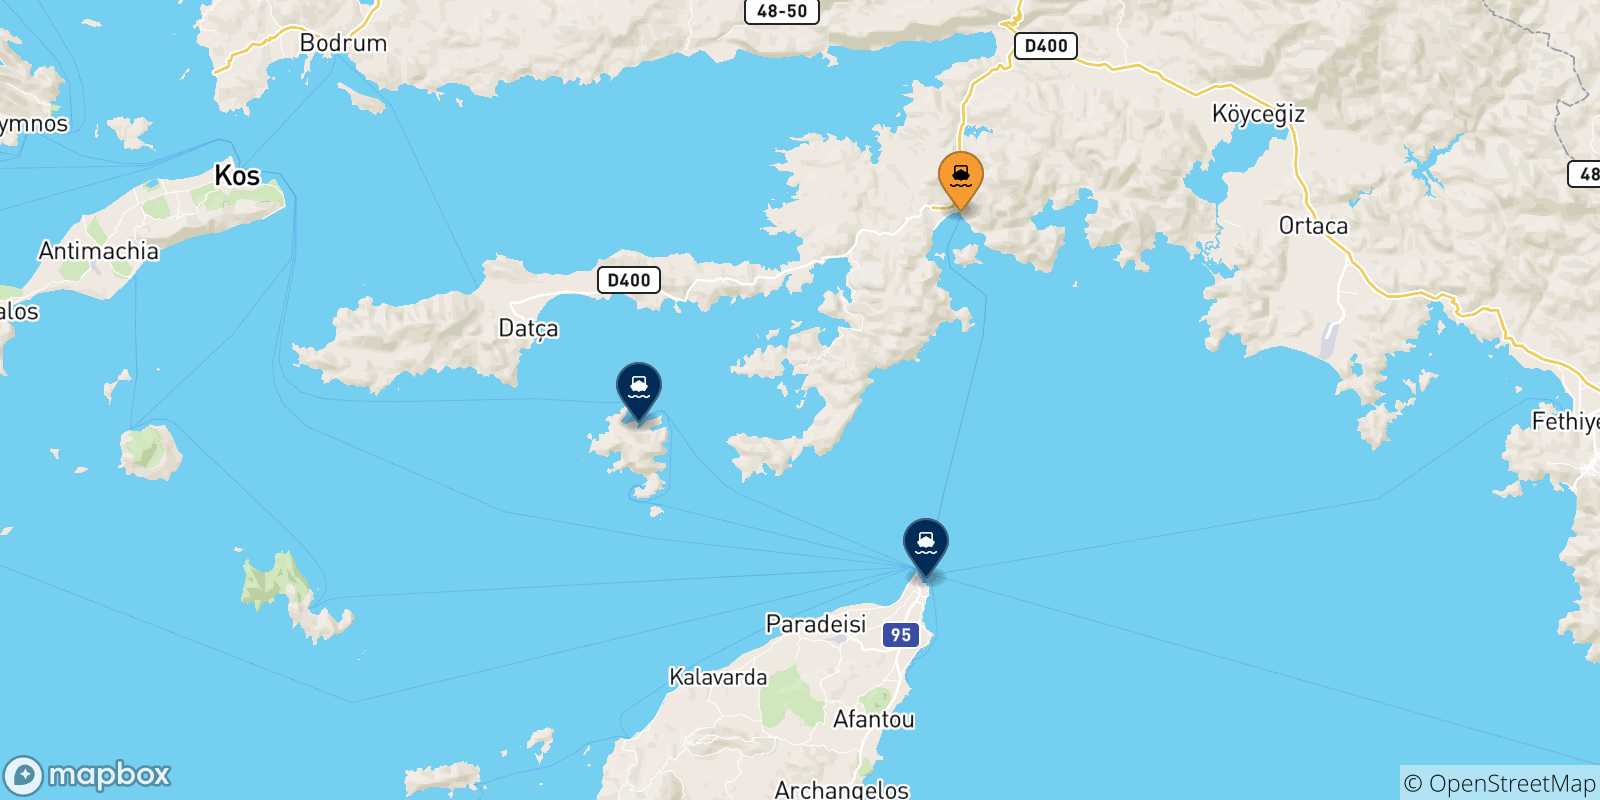 Mappa delle possibili rotte tra Marmaris e la Grecia